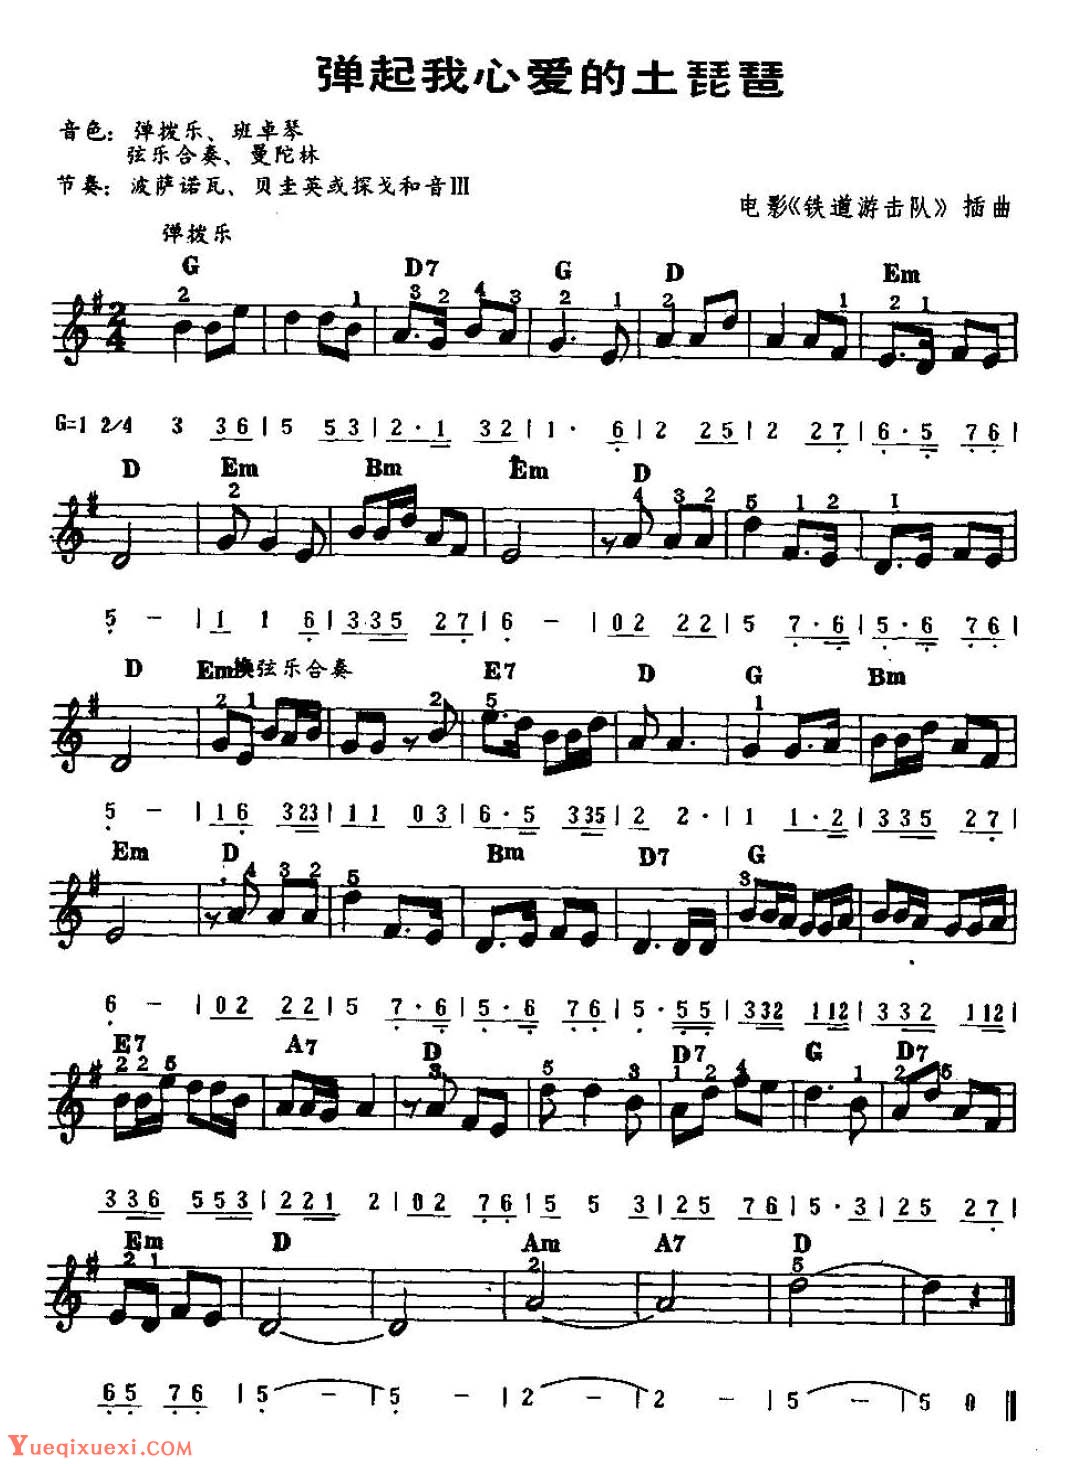 民族声乐考级歌曲：弹起我心爱的土琵琶 - 全屏看谱